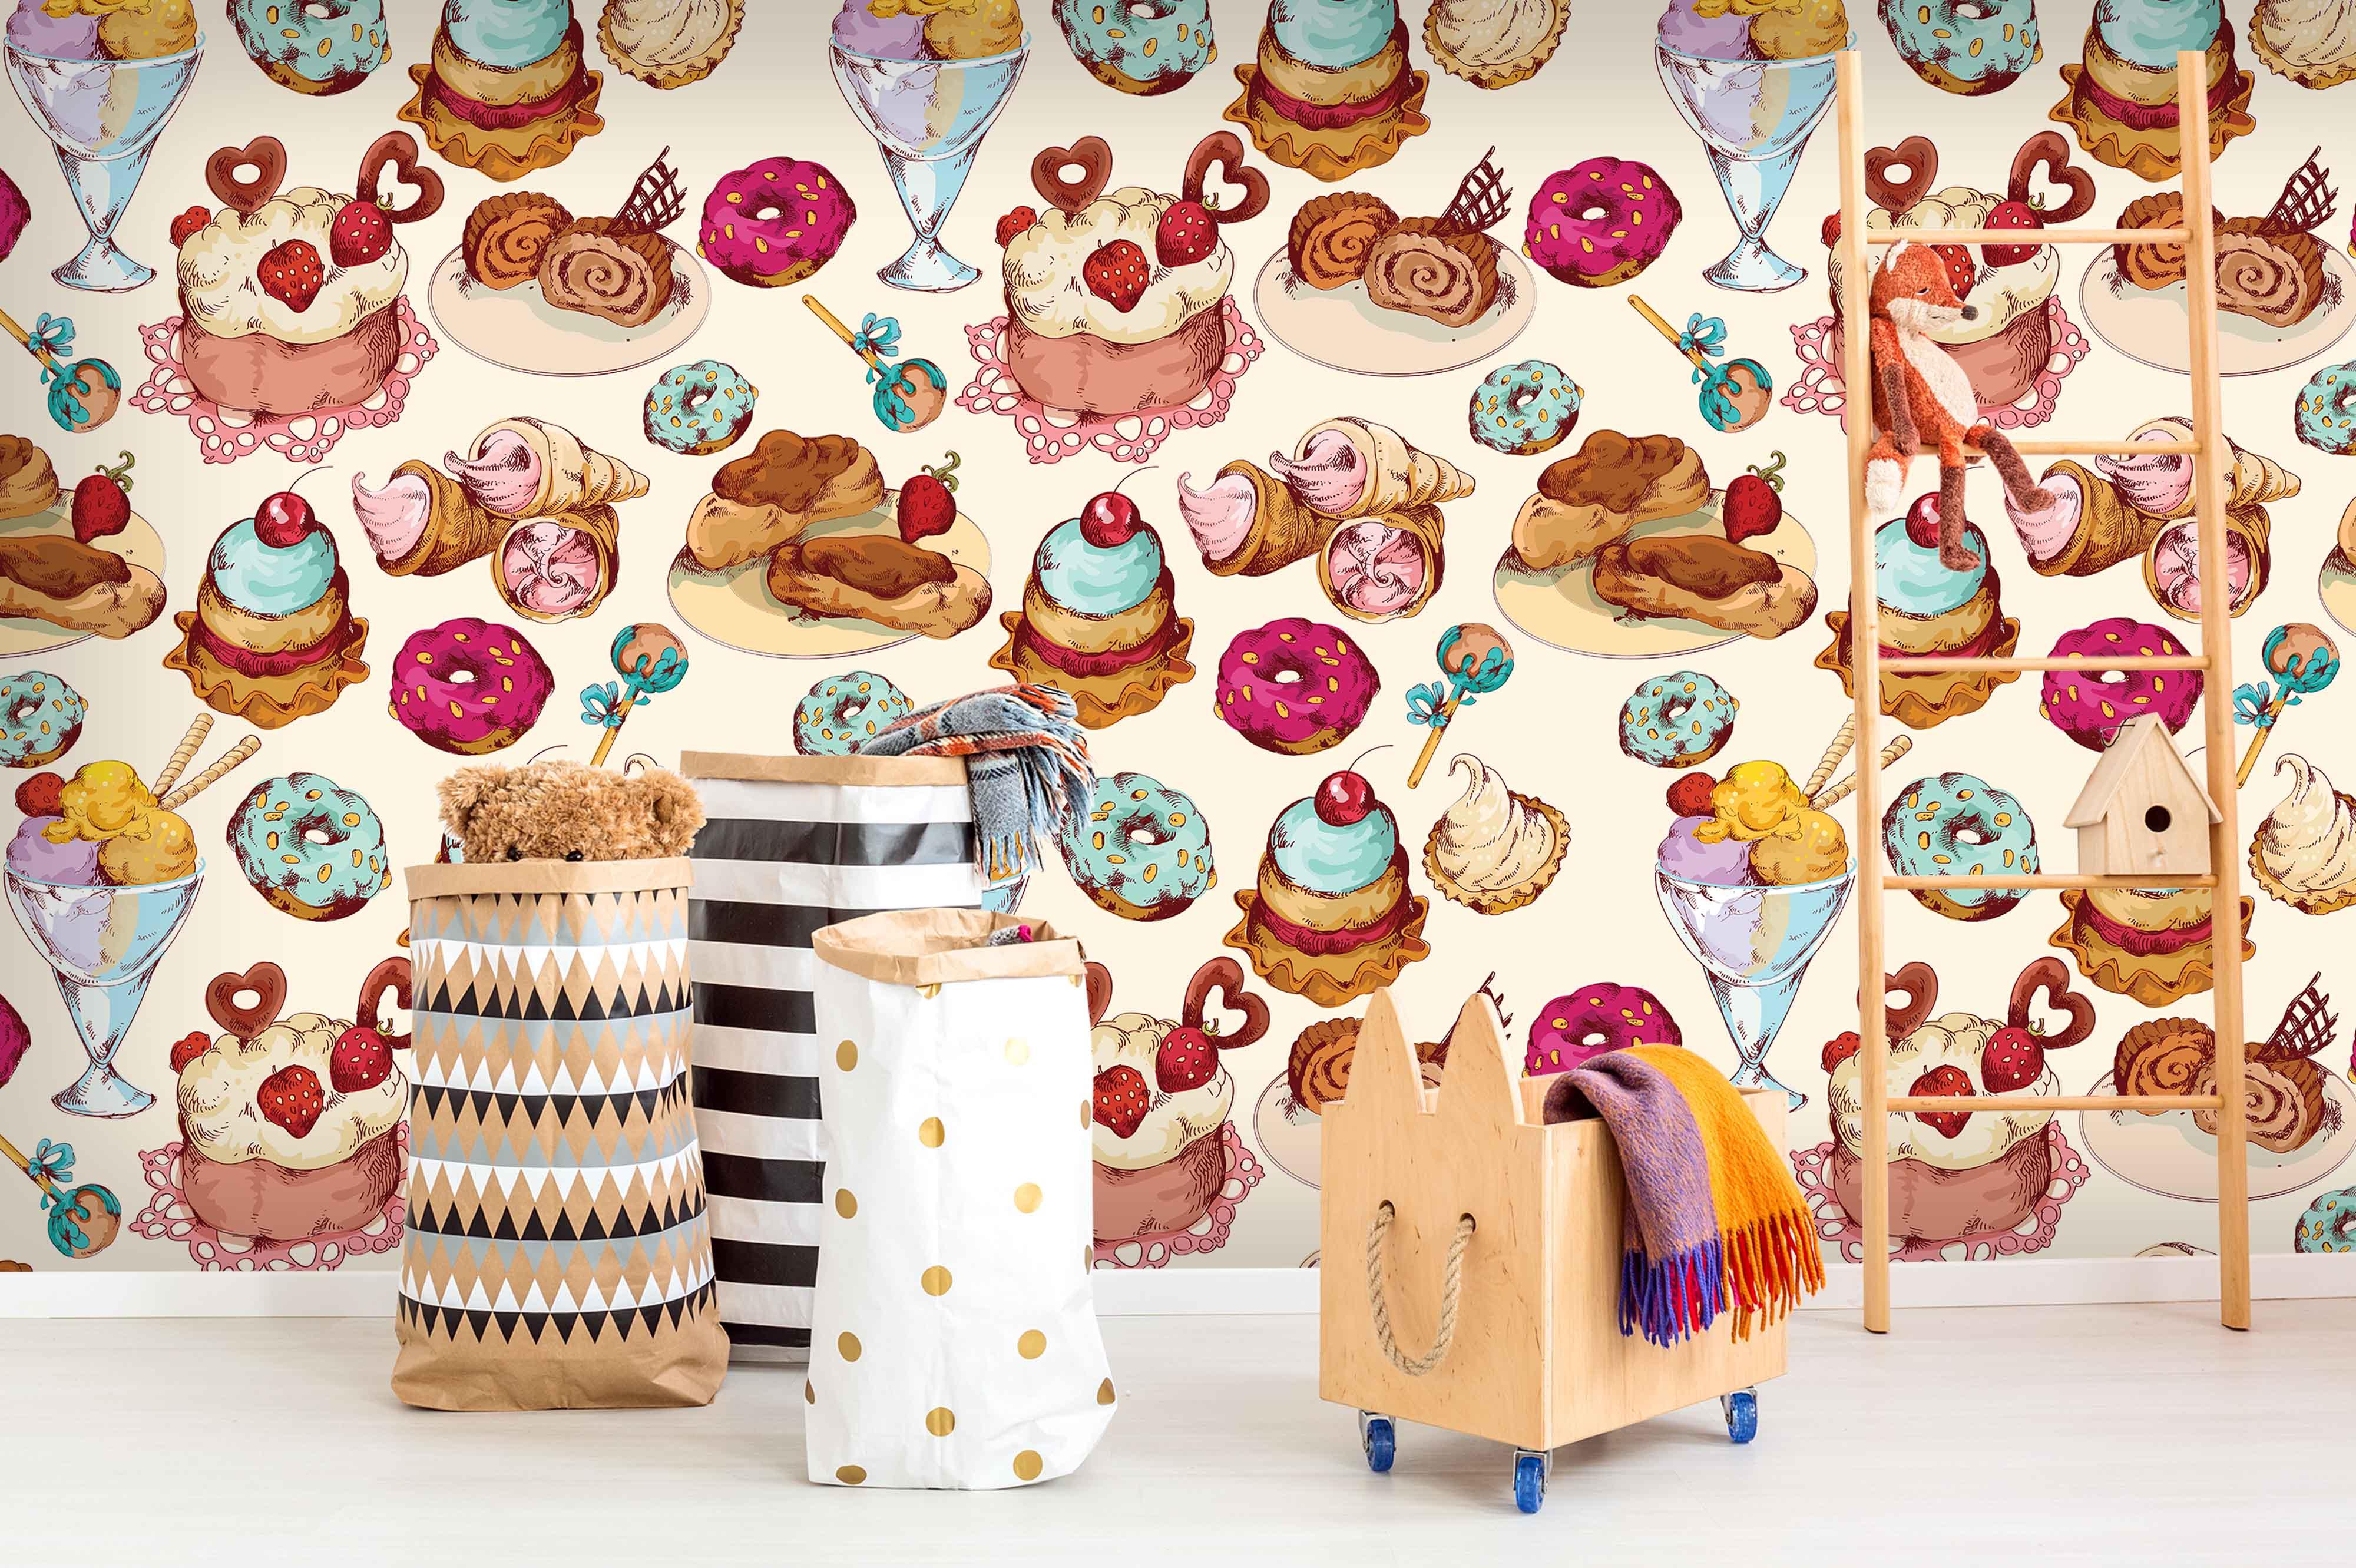 3D Cake Dessert Doughnut Ice Cream Wall Mural Wallpaper 61- Jess Art Decoration